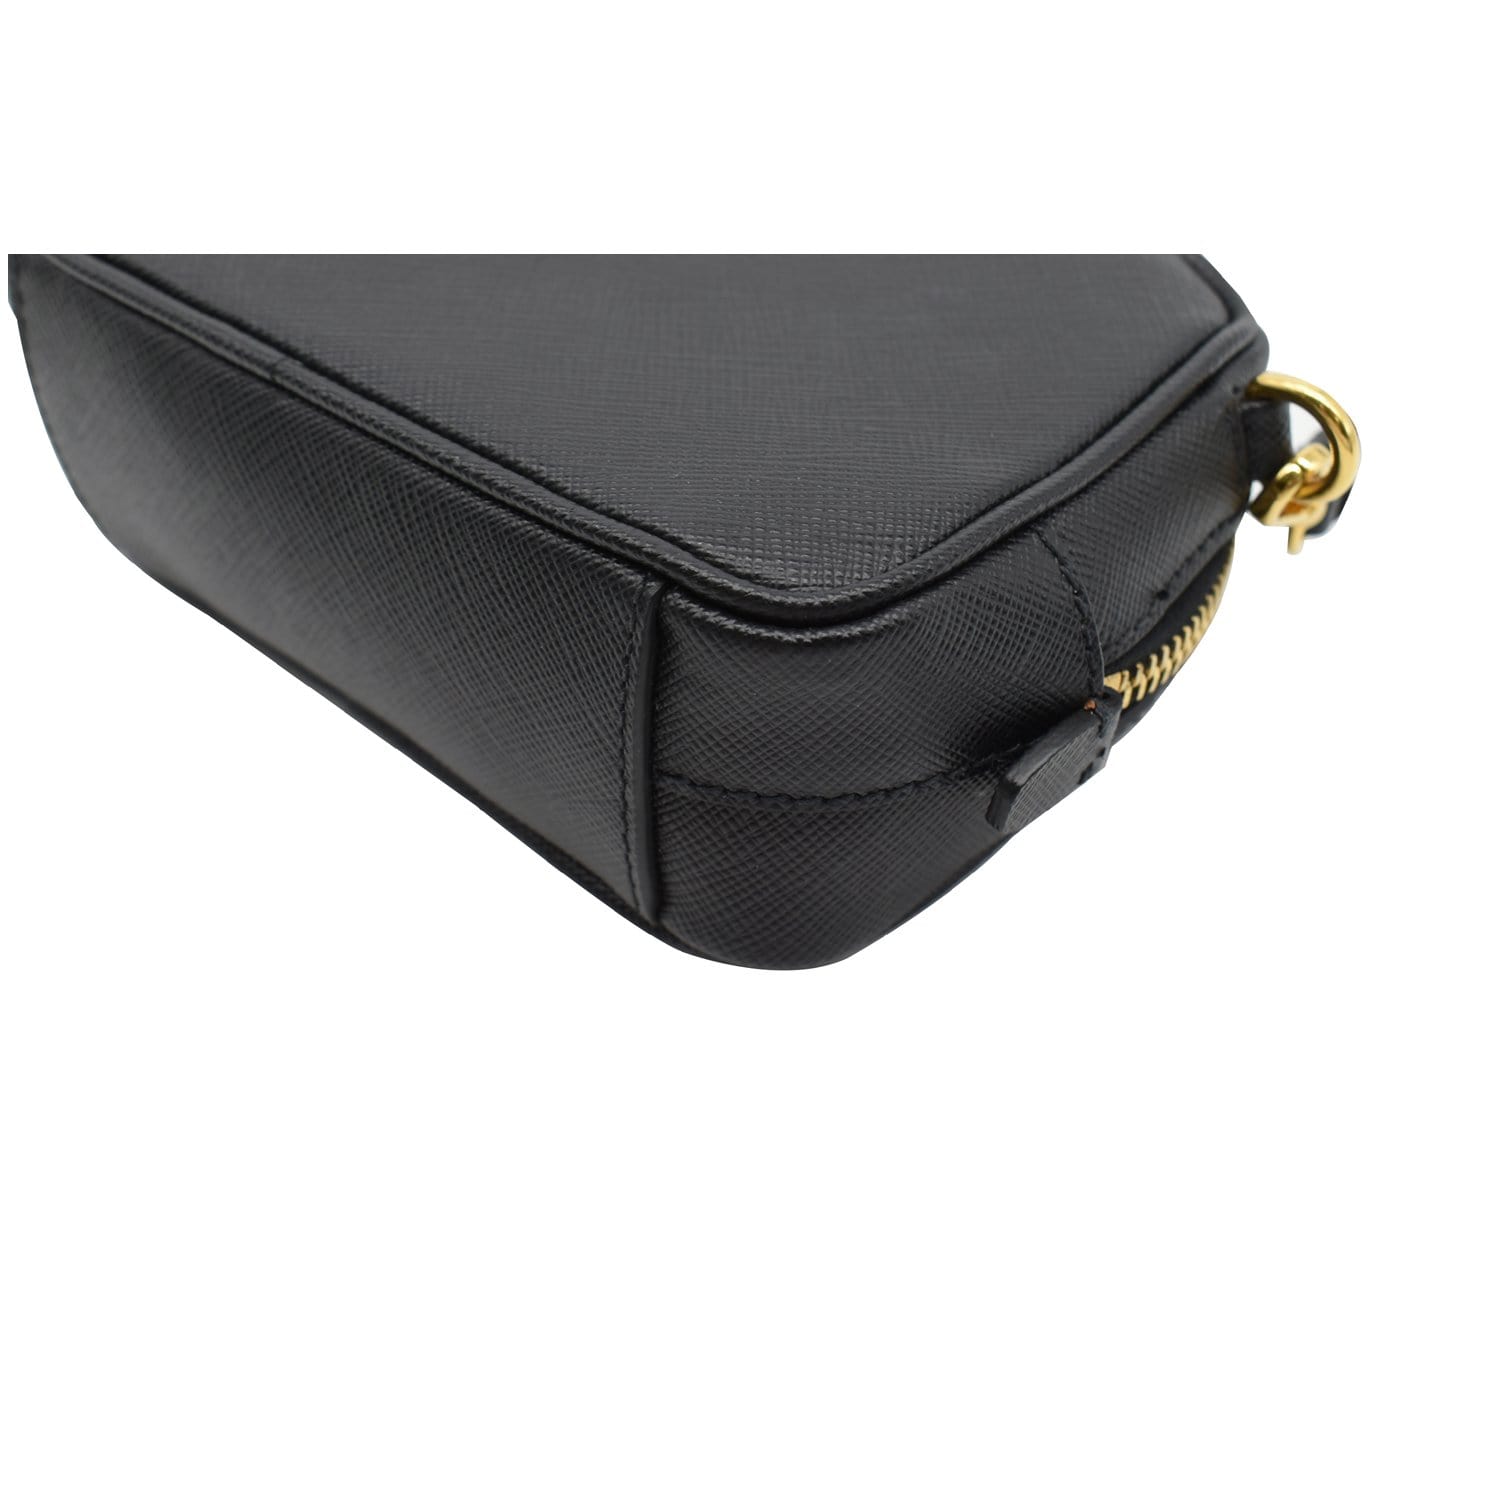 PRADA Saffiano Leather Camera Crossbody Bag Black